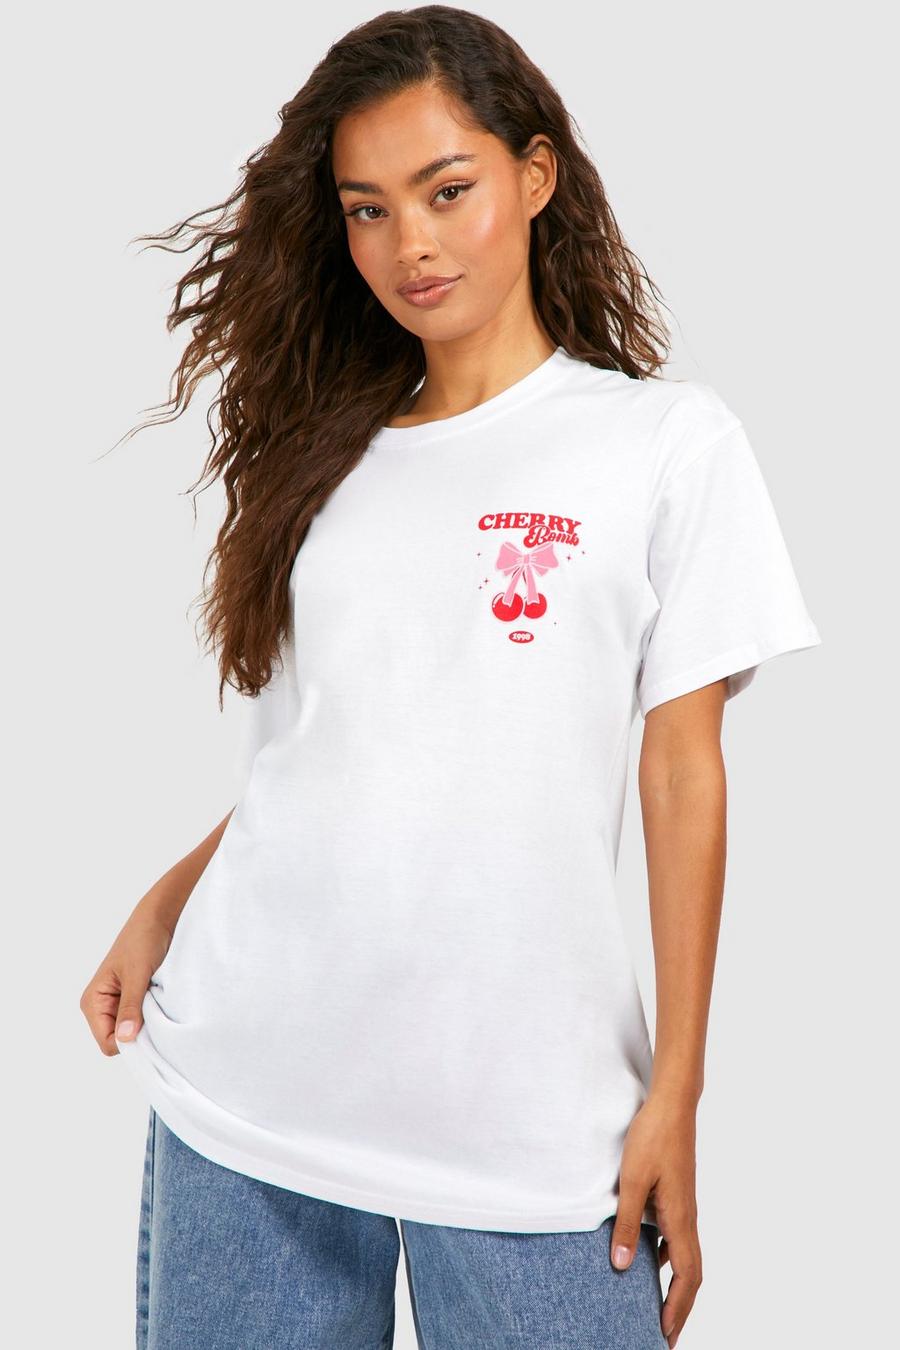 Oversize Baumwoll T-Shirt mit Cherry Bomb Taschenprint, White